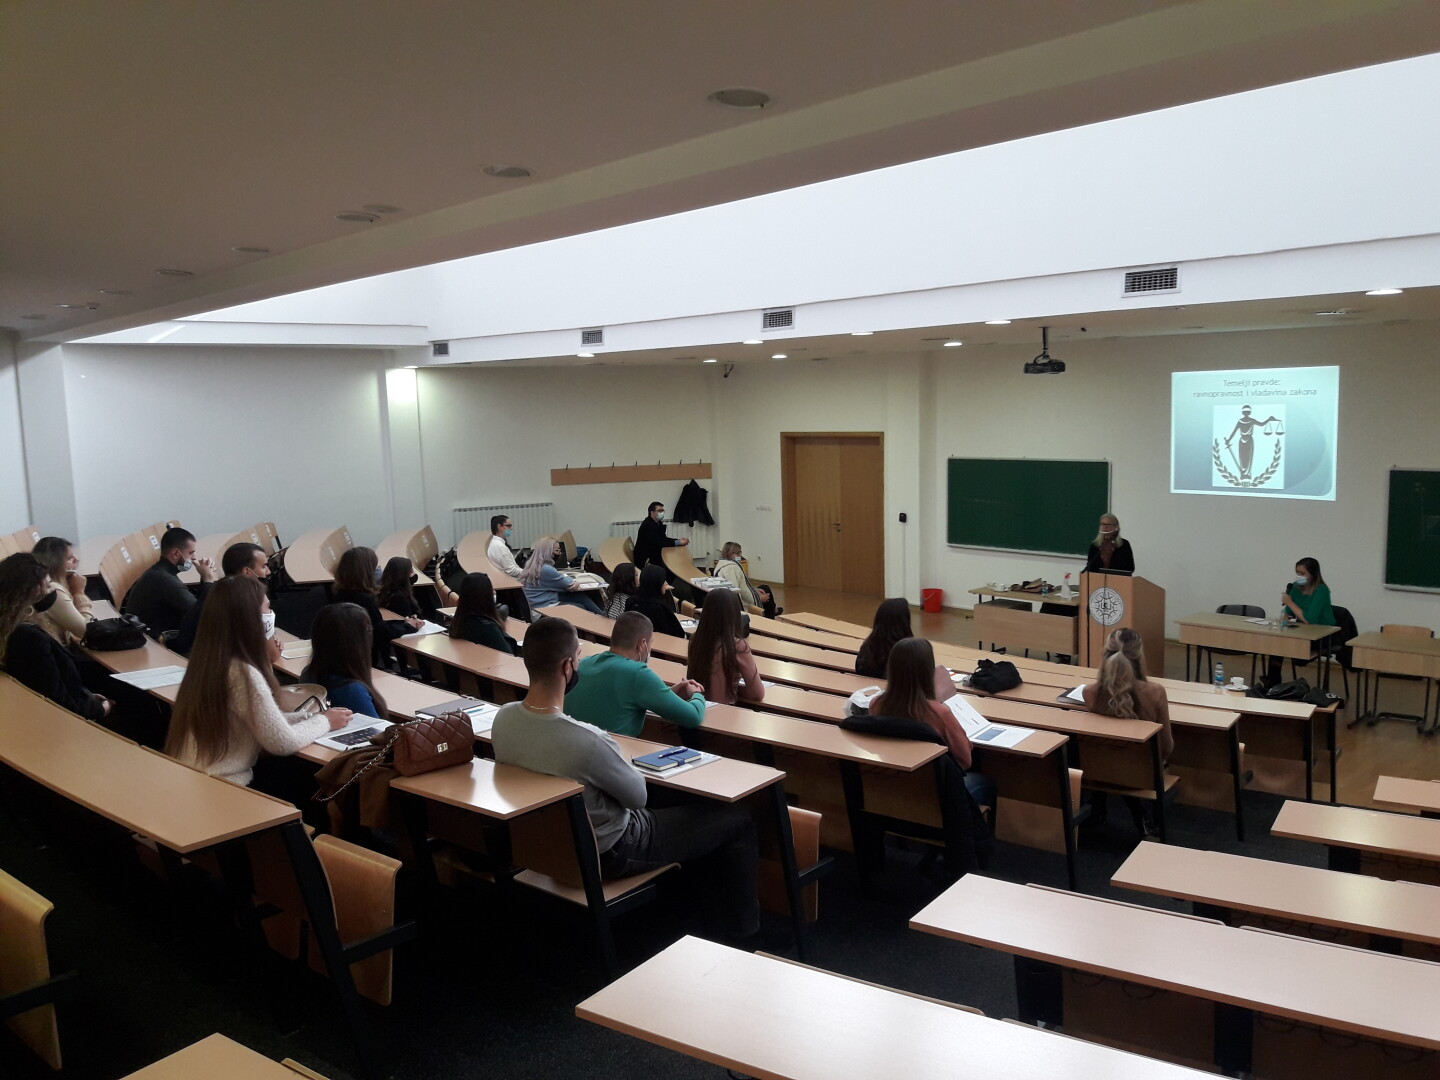 Održano promotivno predavanje za studente novog partnerskog pravnog fakulteta u Istočnom Sarajevu